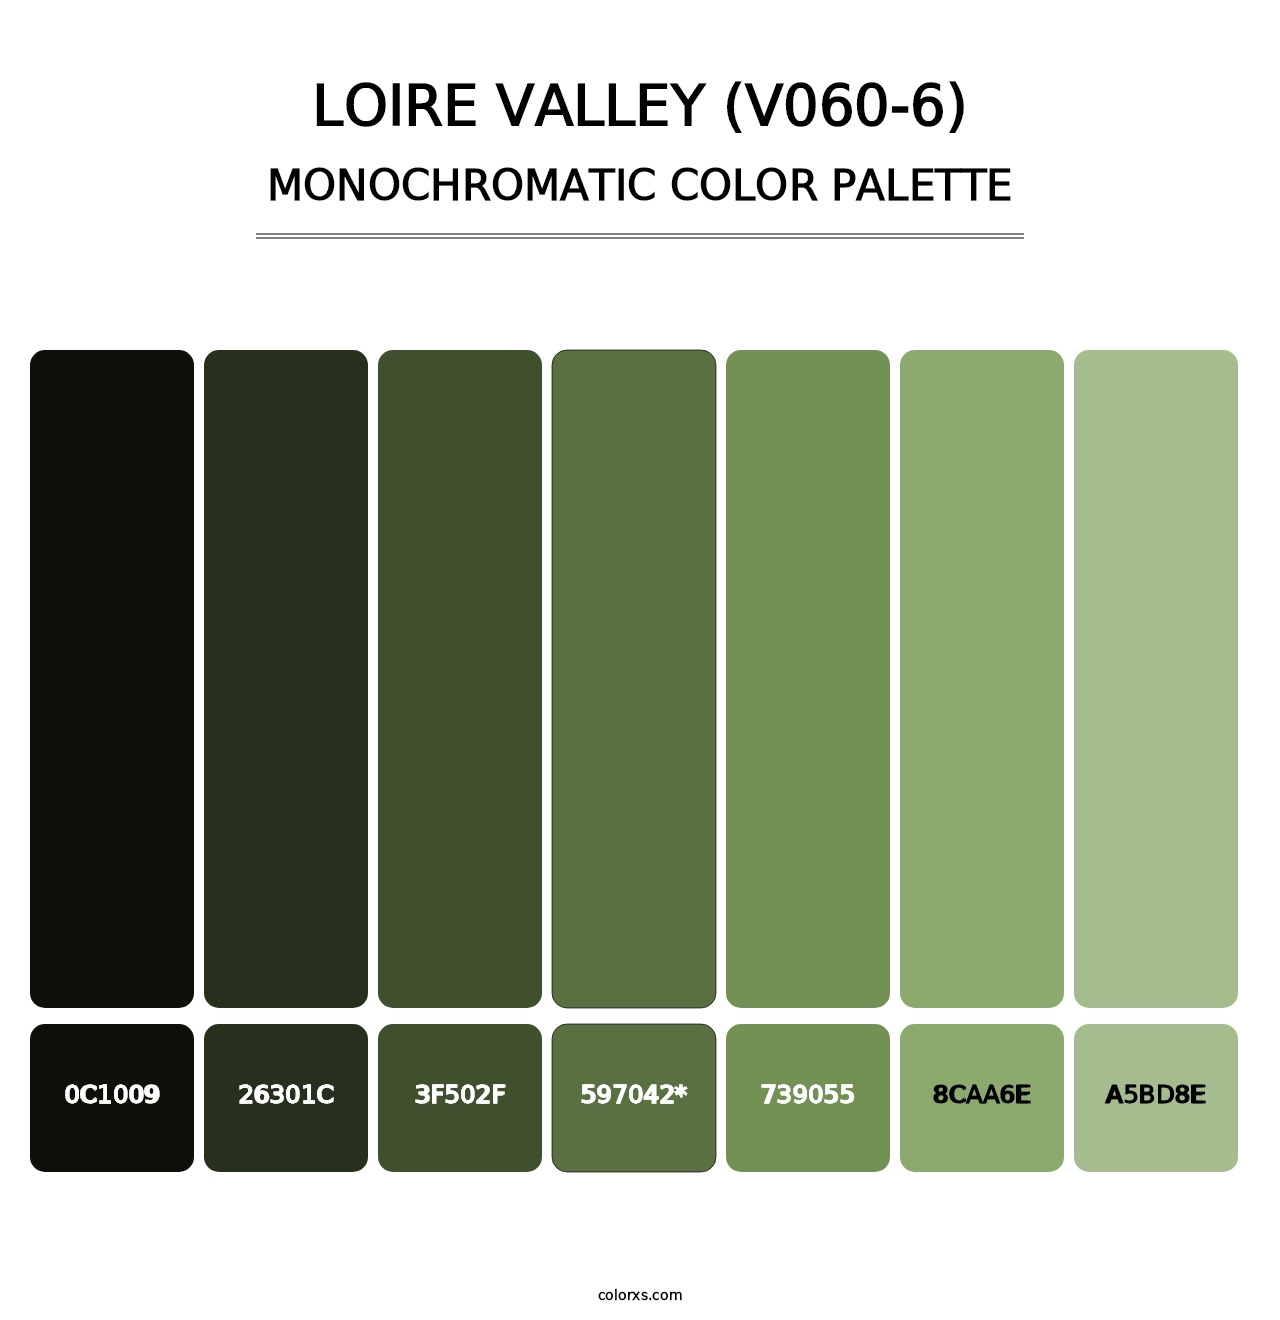 Loire Valley (V060-6) - Monochromatic Color Palette